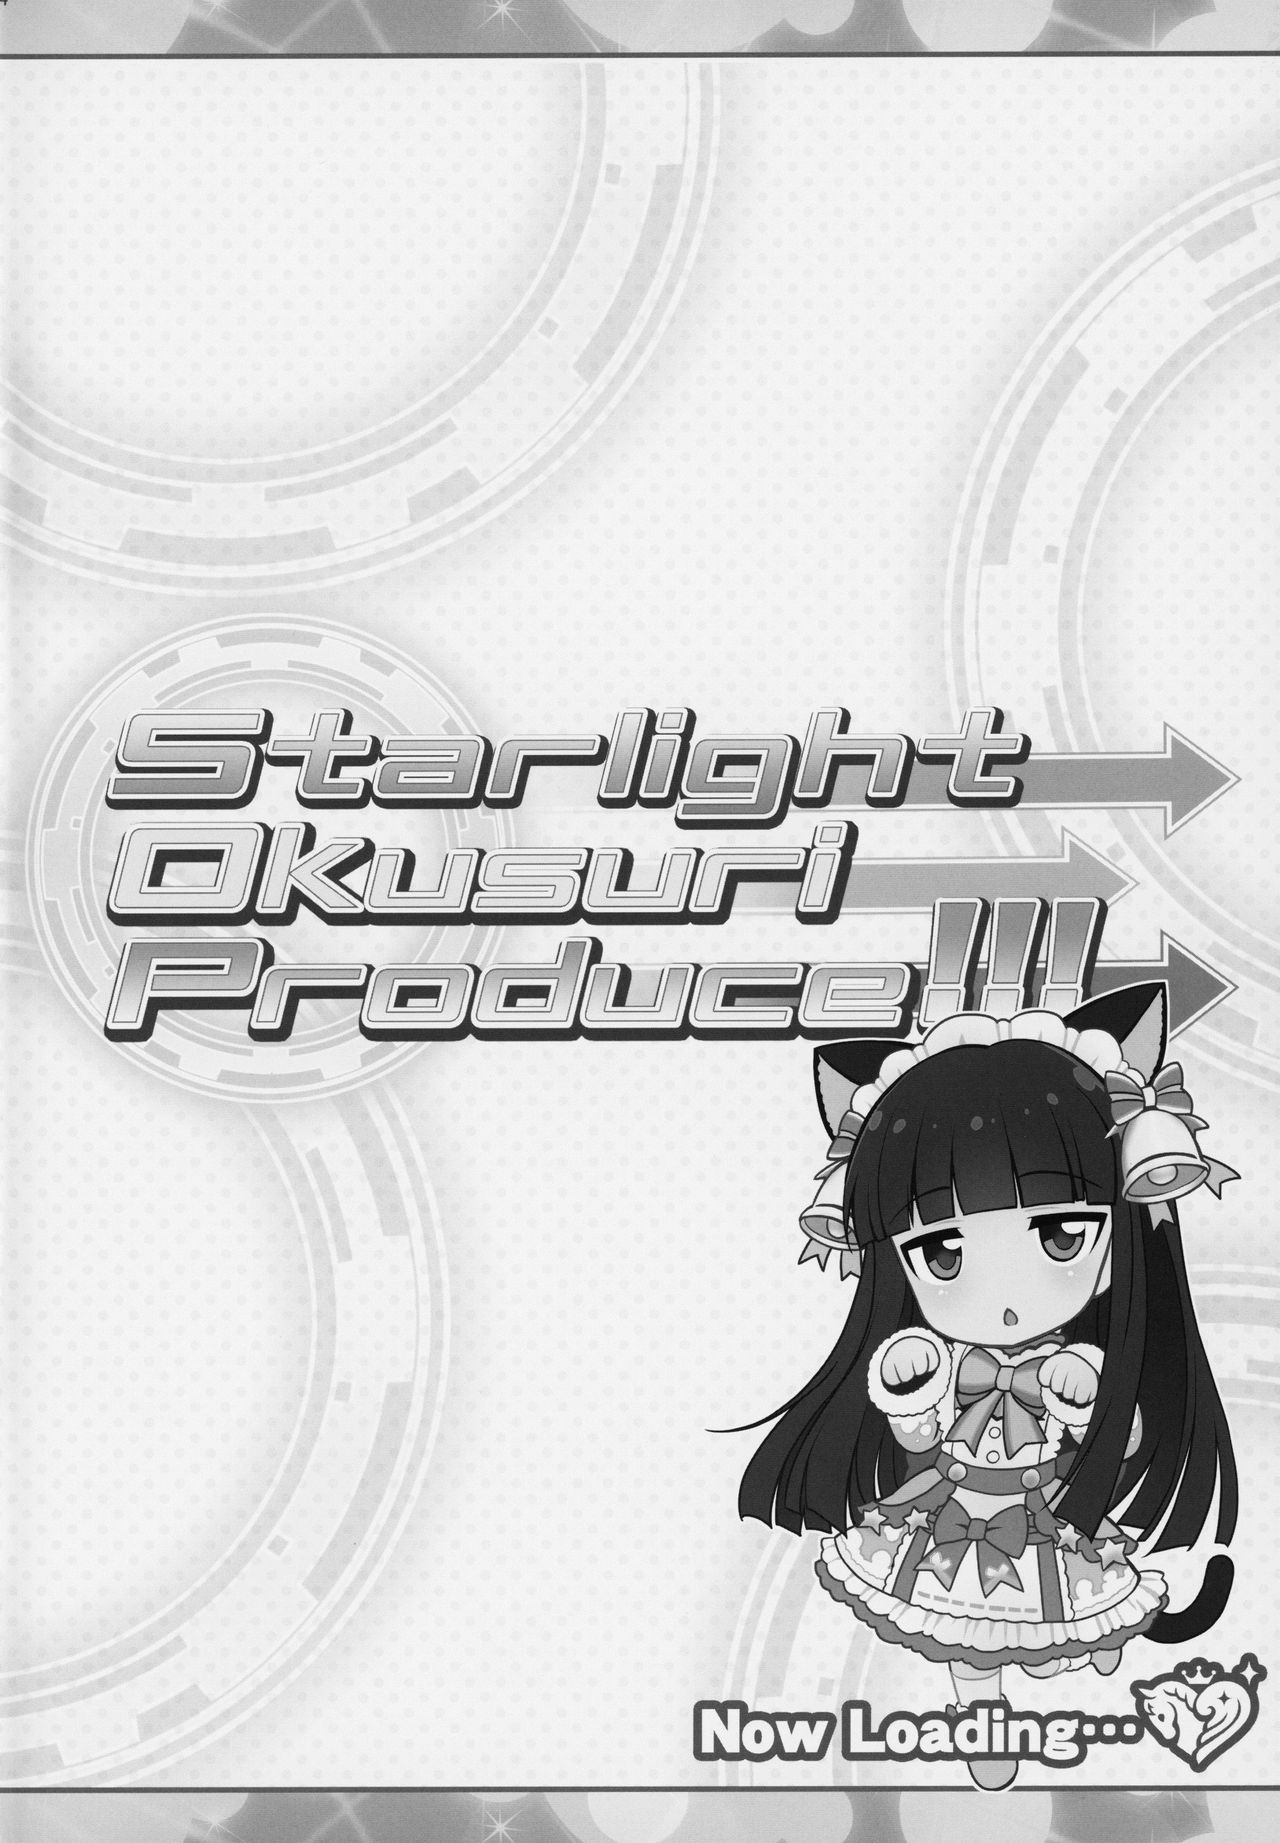 (歌姫庭園18) [ふらいぱん大魔王 (提灯暗光)] Starlight Okusuri Produce!!! (アイドルマスター シンデレラガールズ)